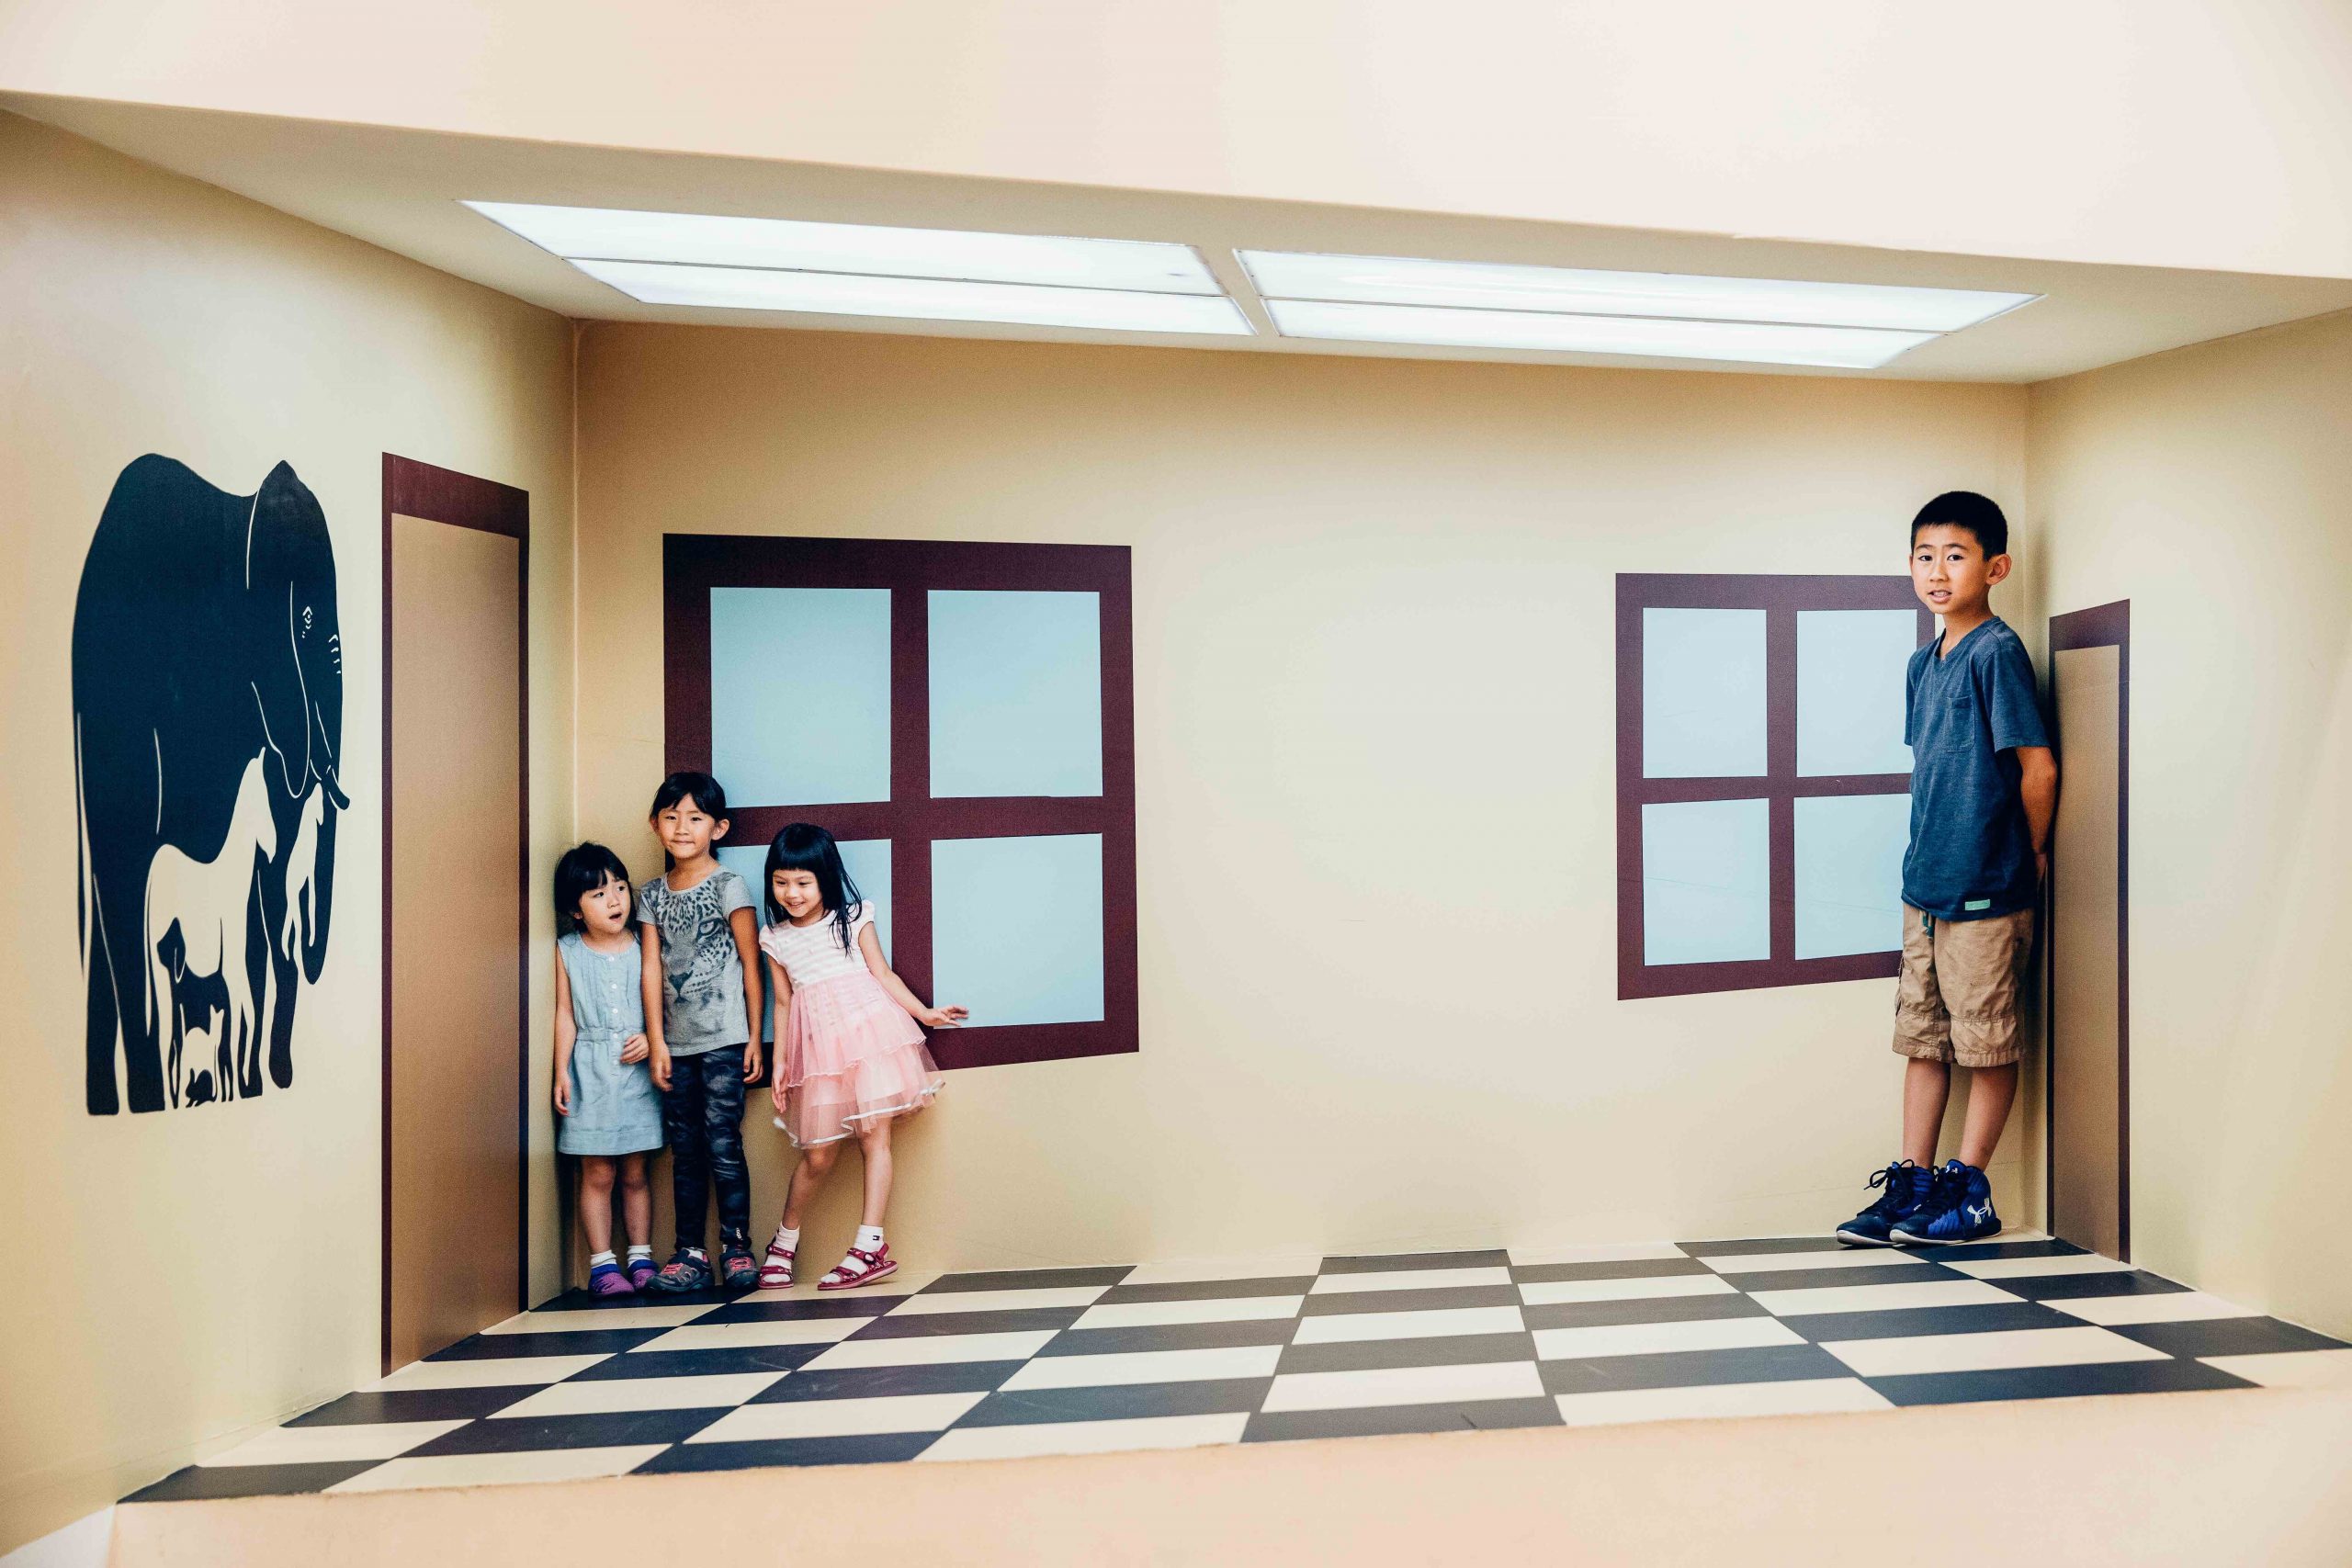 臺北市立美術館兒童教育藝術中心「小 · 大」展覽中小朋友在小房間裡玩鬧